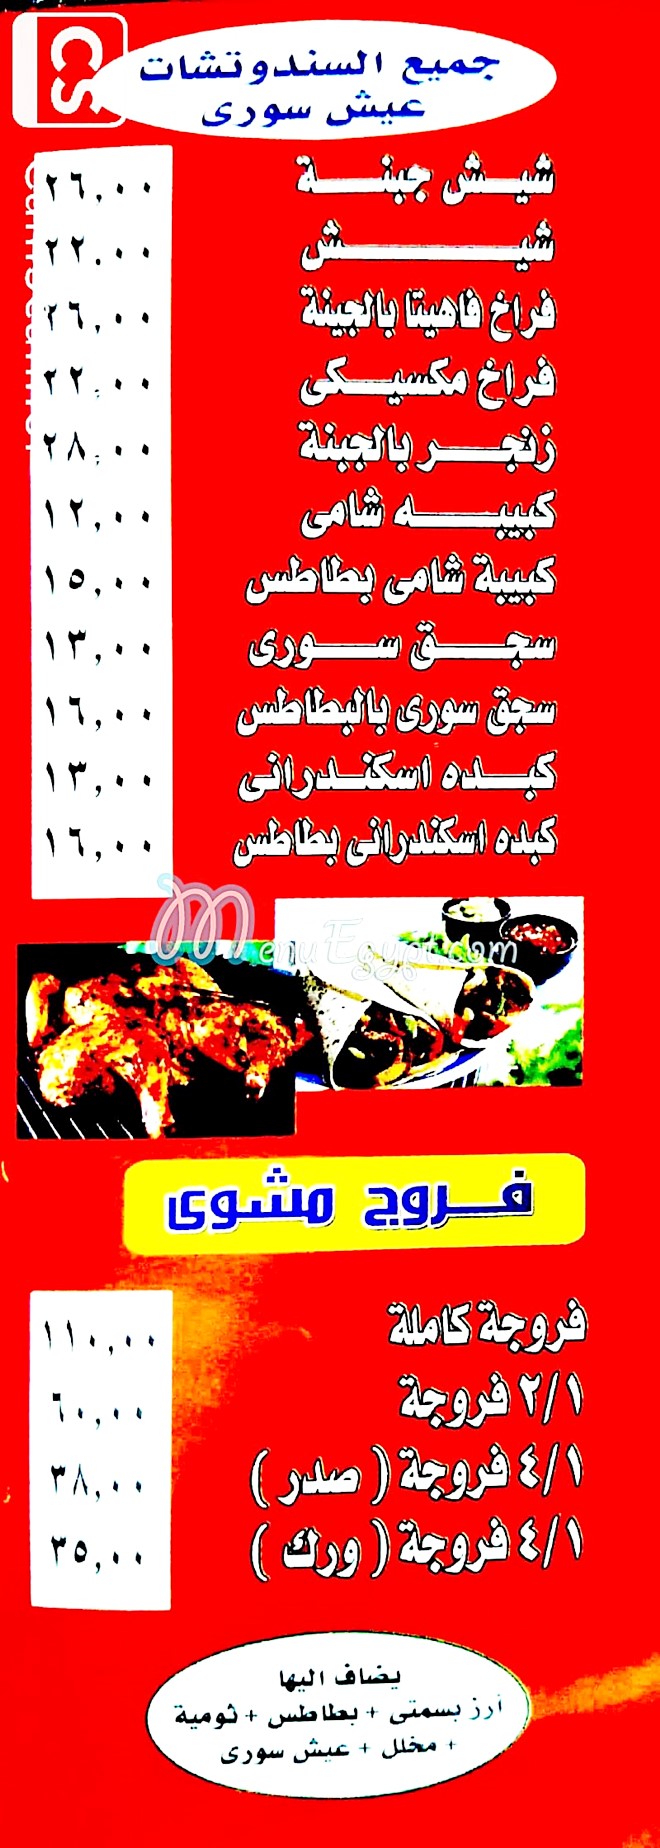 Shawarma Abu Yzn El Sory egypt